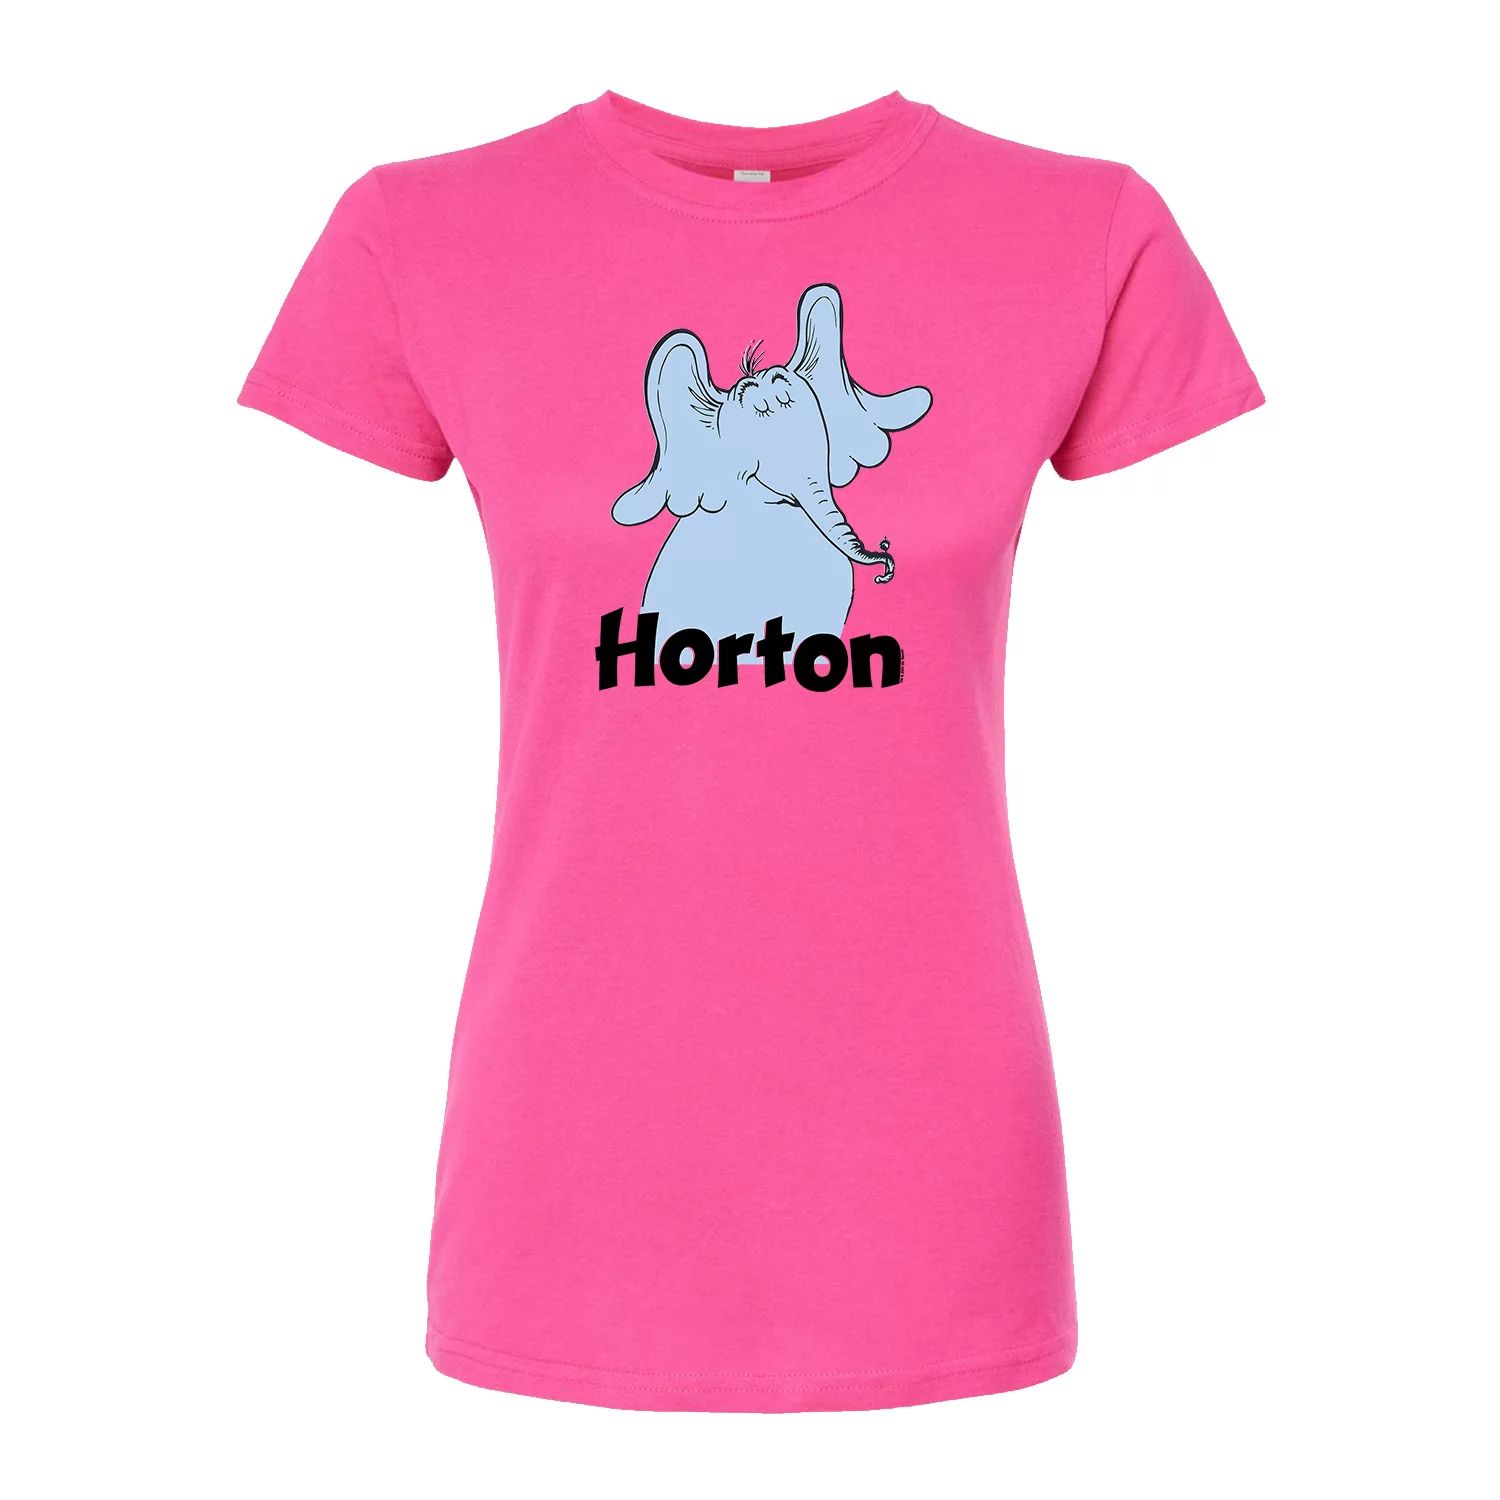 Доктор Сьюз Хортон из юниоров слышит, кто примерил футболку Licensed Character, розовый доктор сьюз хортон высиживает яйцо